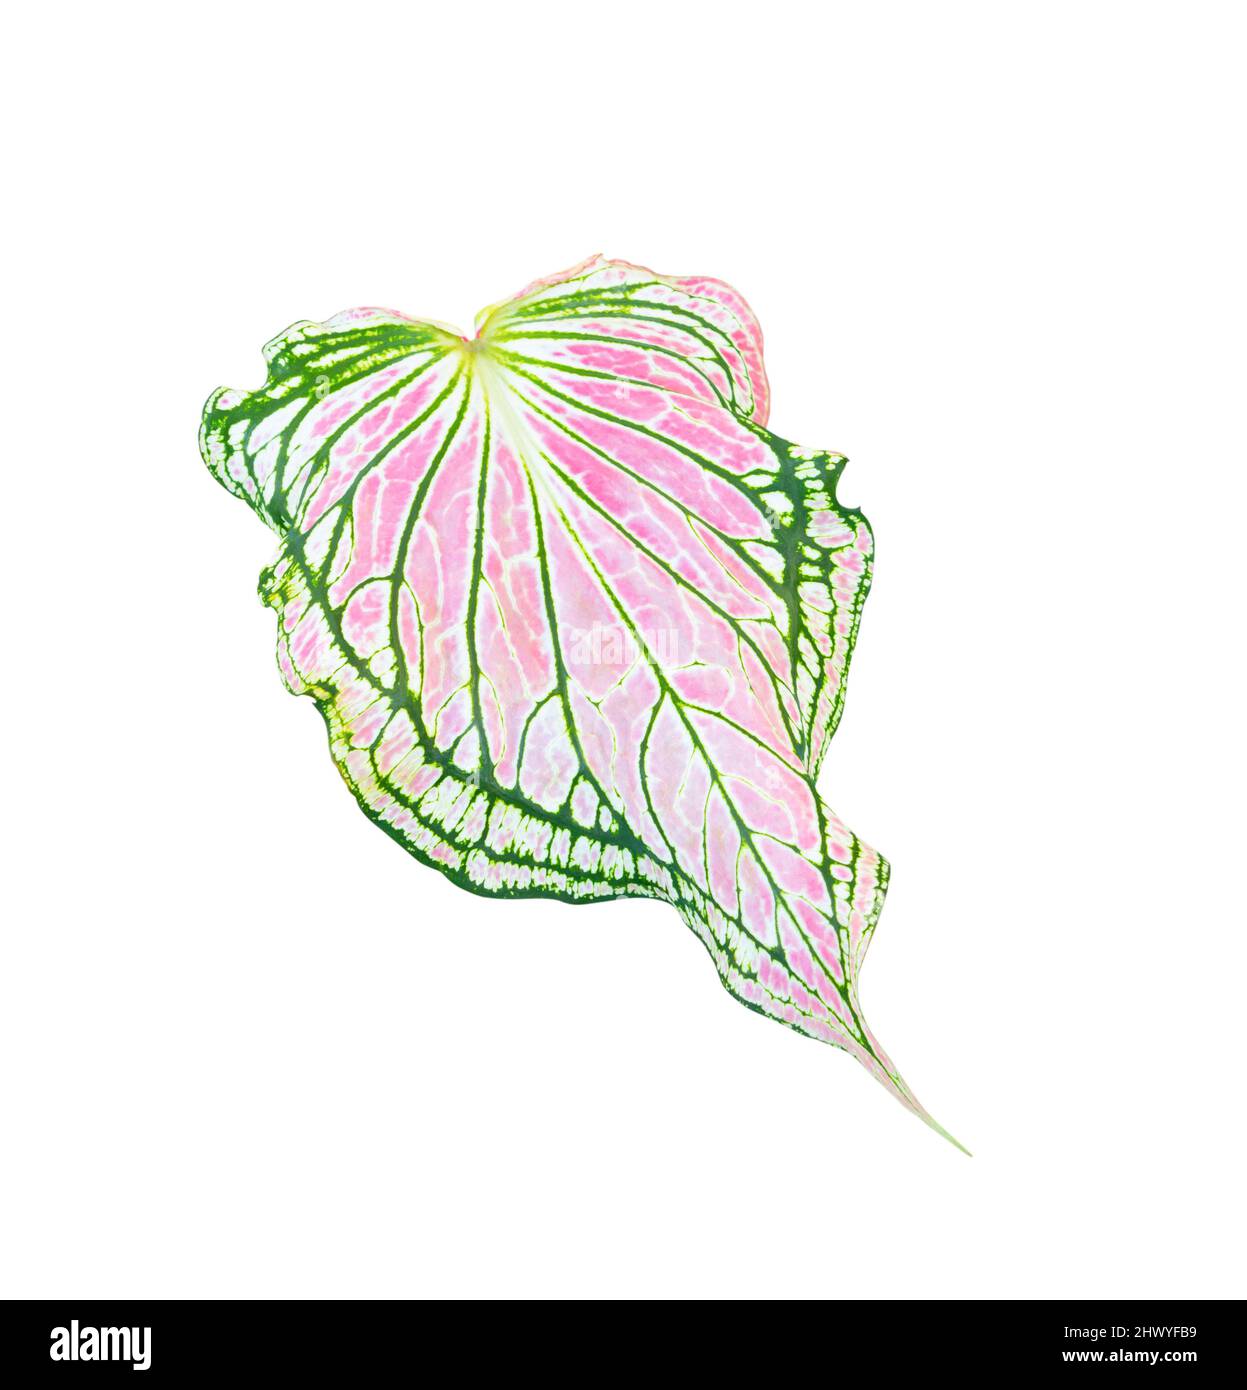 Caladium bicolore foglie piante colorate di foglie di bon bello isolato su sfondo bianco Foto Stock